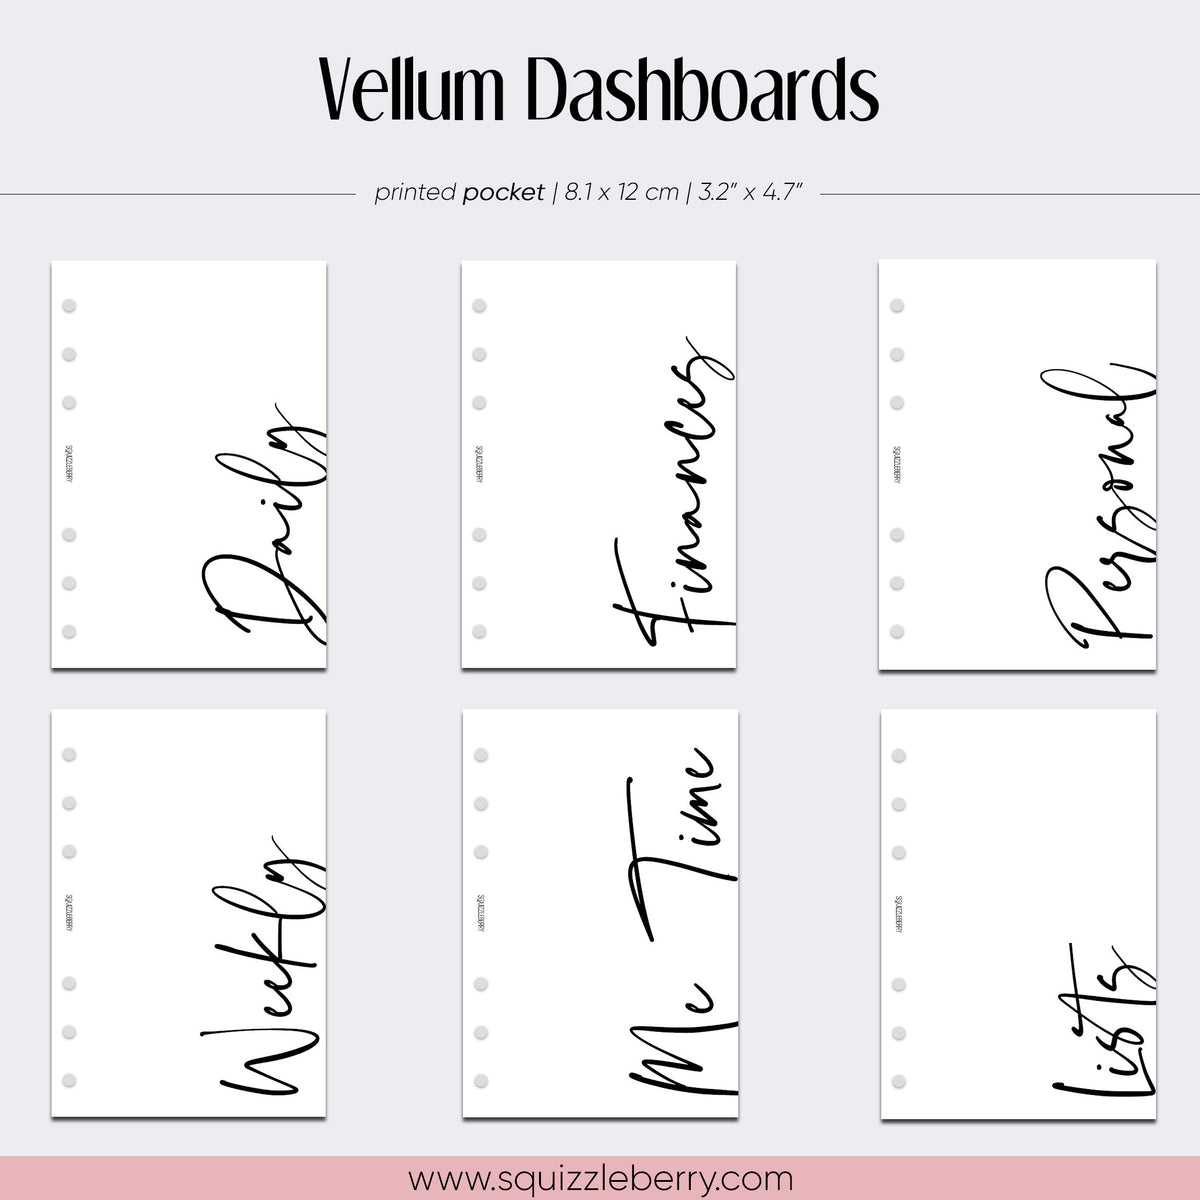 Vellum Dashboards - Pocket | SquizzleBerry